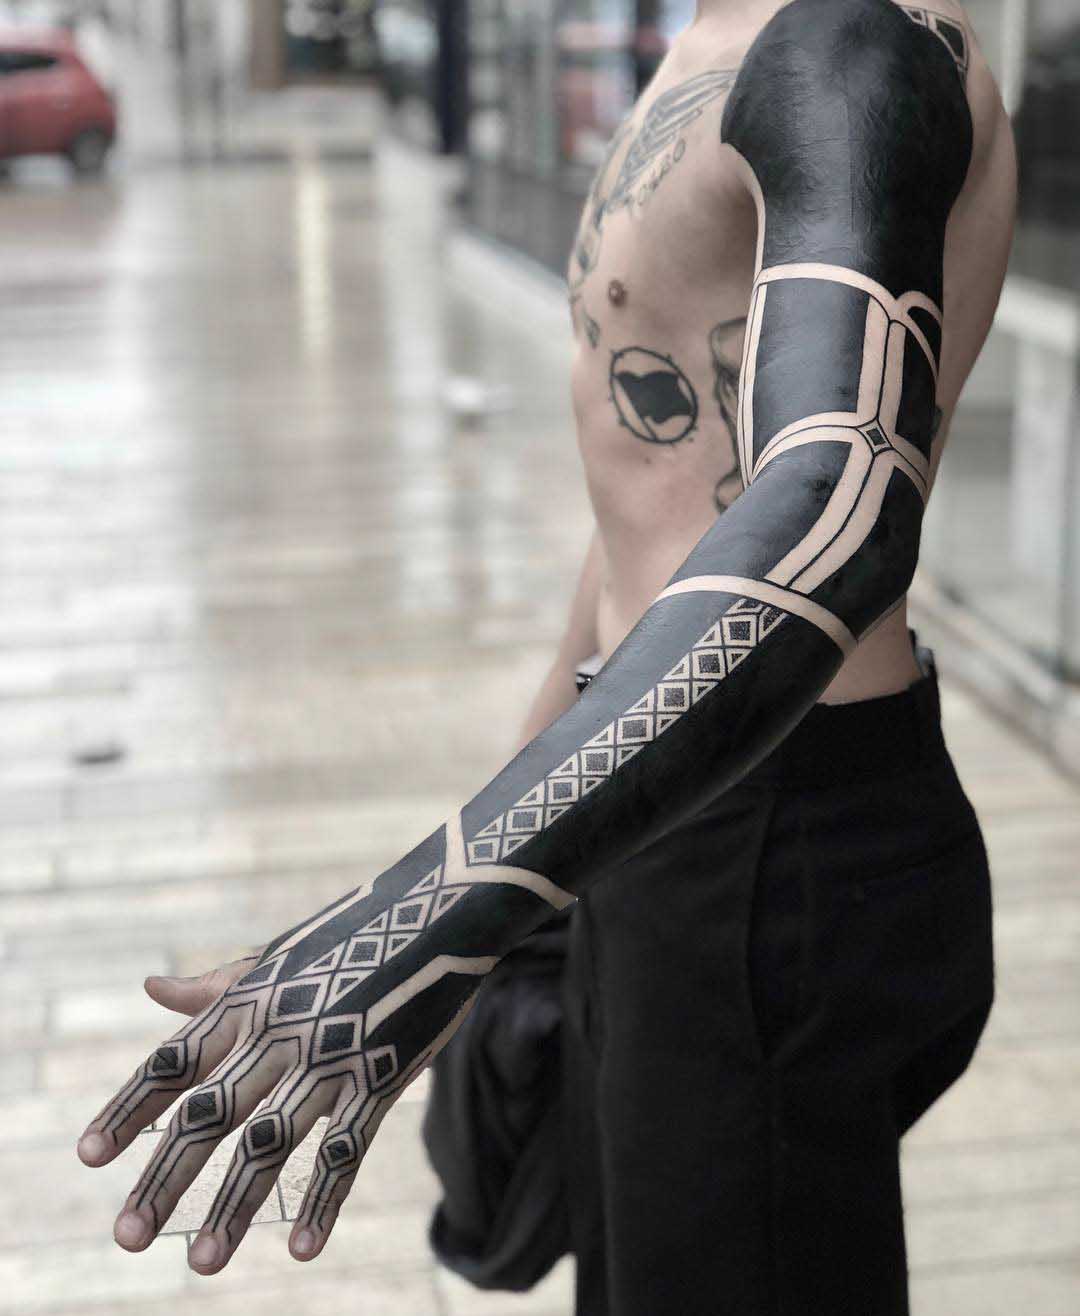 blackwork tattoo sleeve